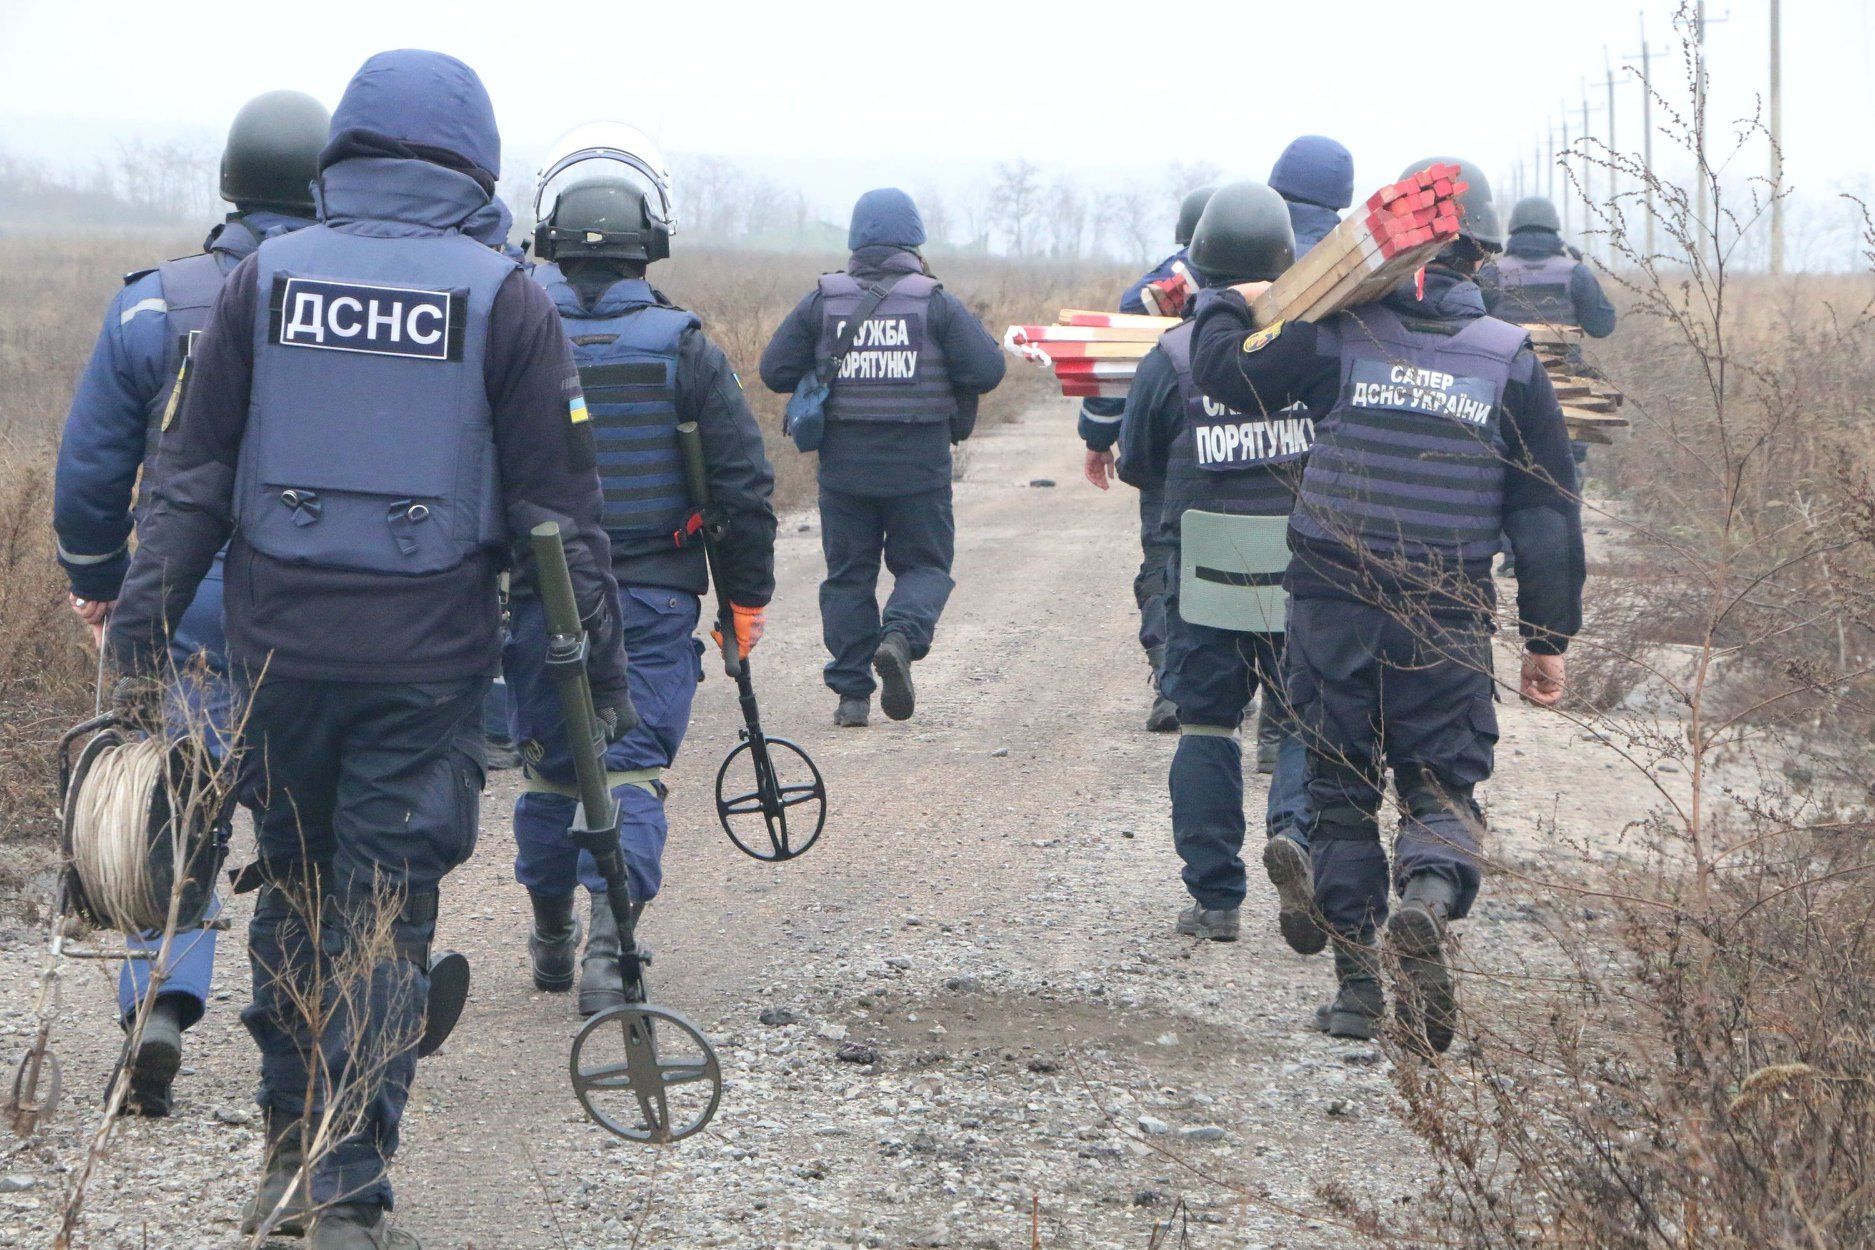 Разведение сил на Донбассе: как реагируют местные жители